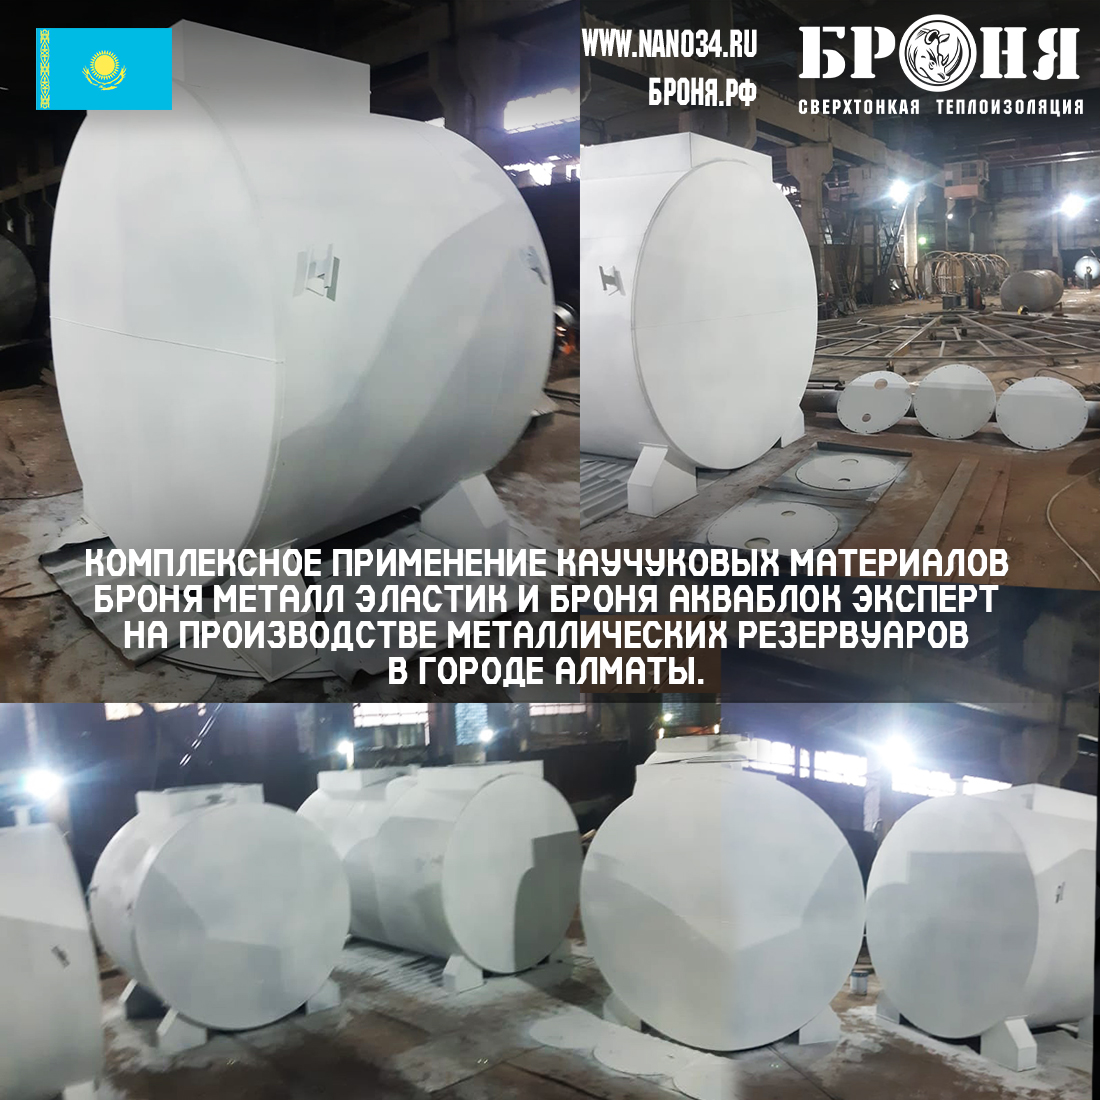 Combination of rubber materials Bronya Metal Elastic and Bronya AquaBlock Expert in the production of metal tanks in Almaty (photo)